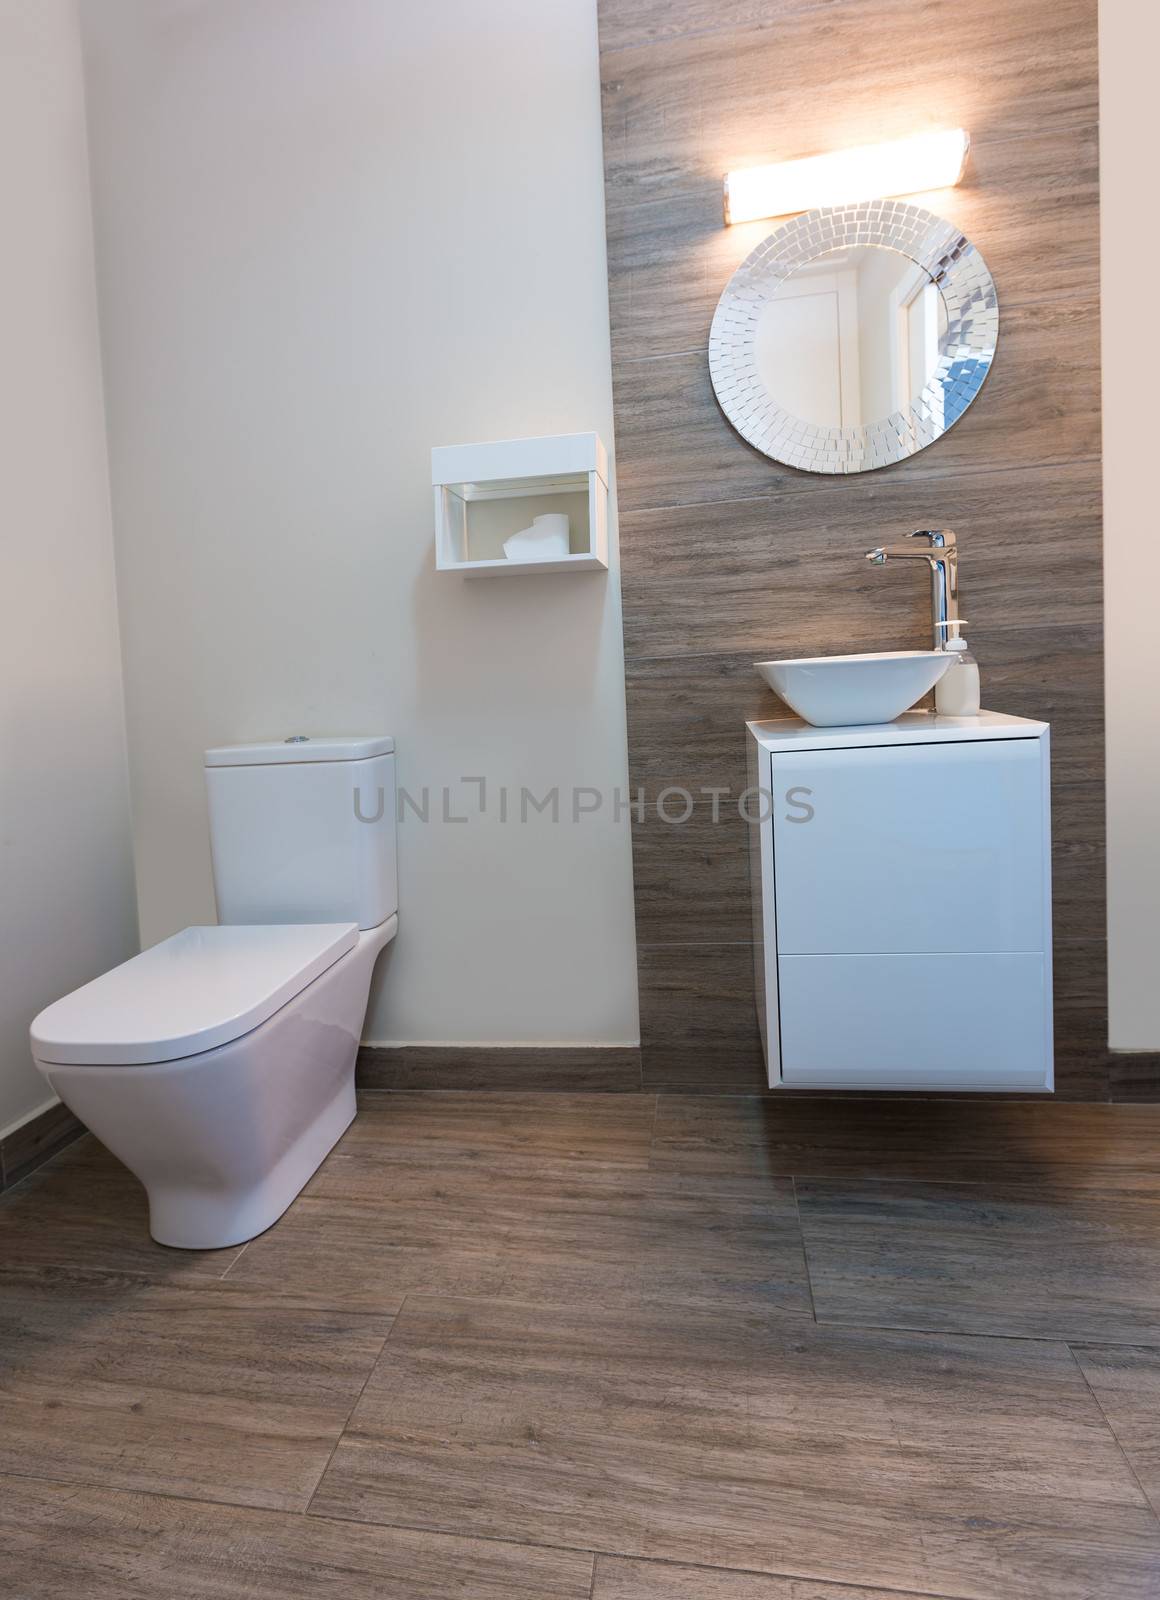 Bathroom toilet with round mirror modern indoor by lunamarina